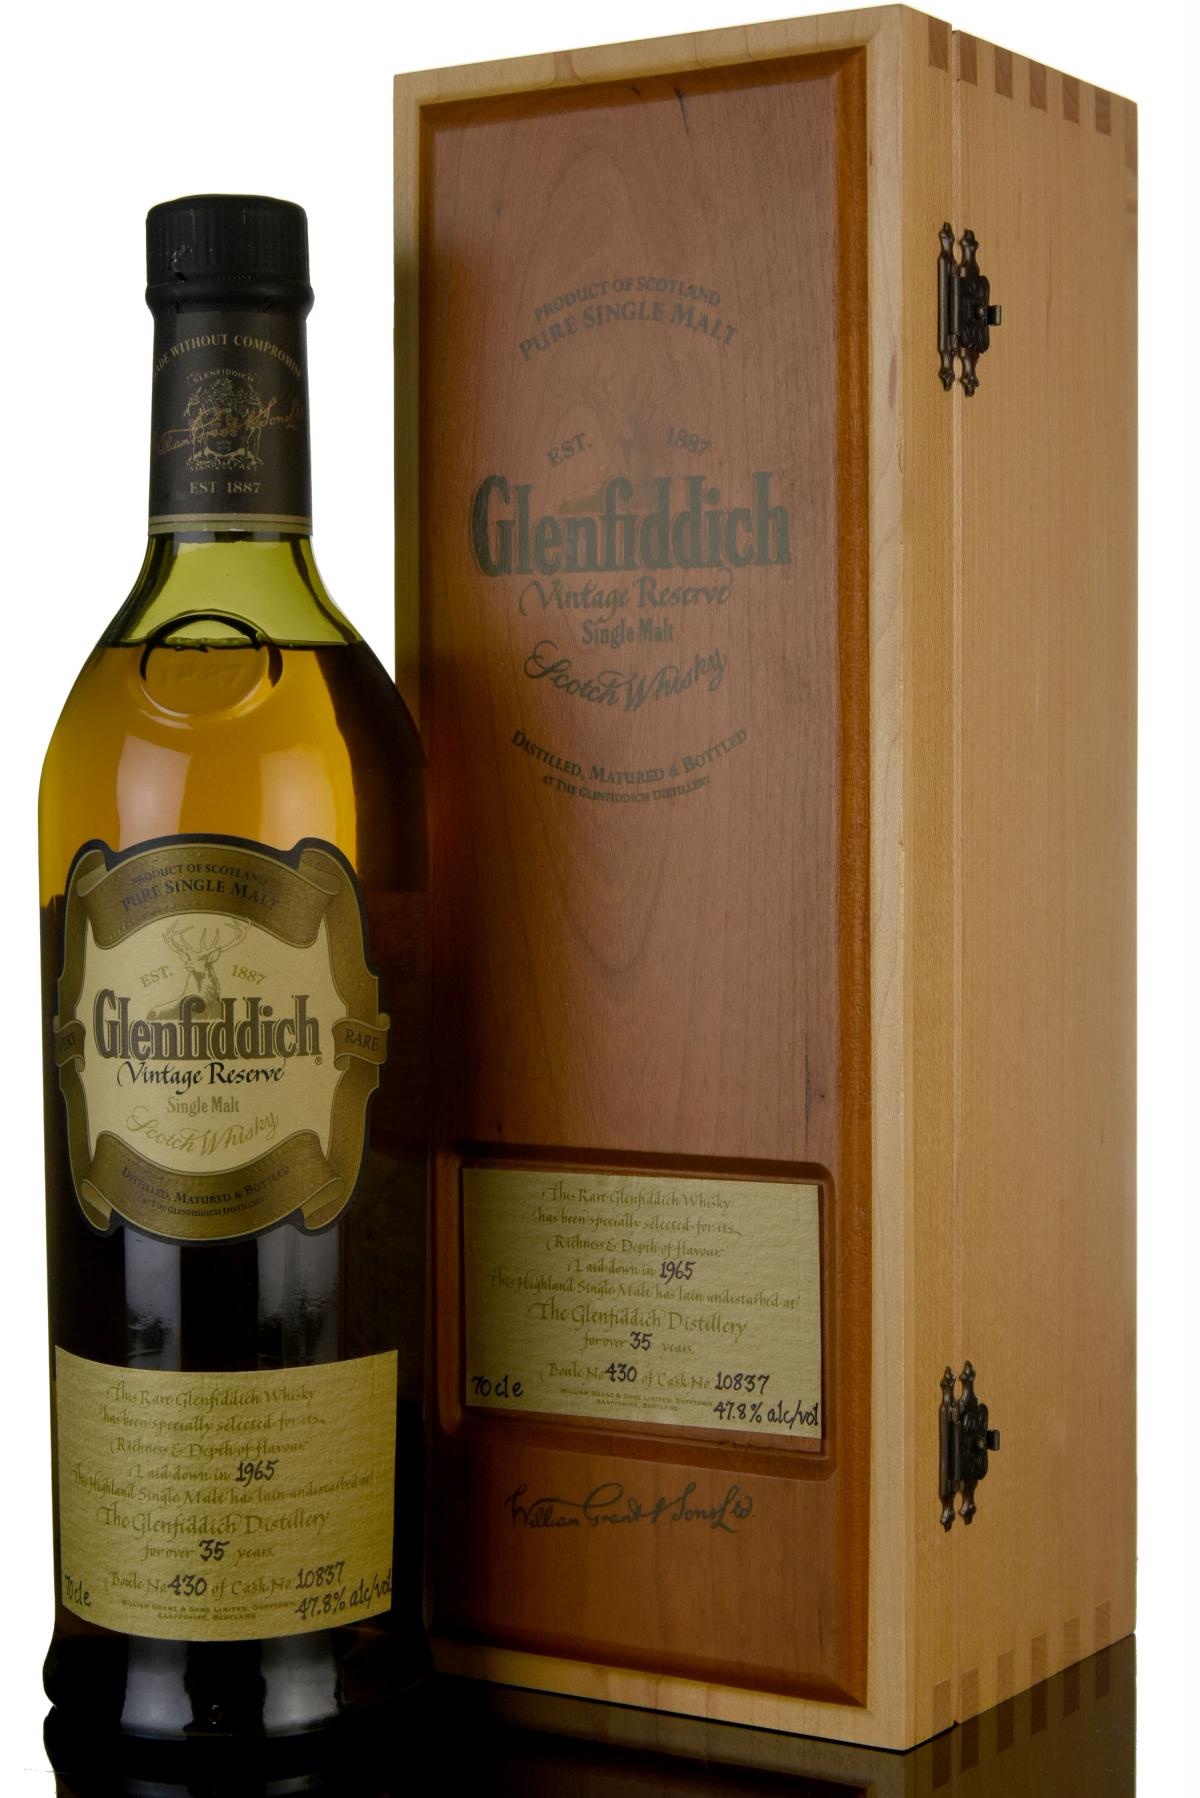 Glenfiddich 1965 - 35 Year Old - Vintage Reserve - Single Cask 10837